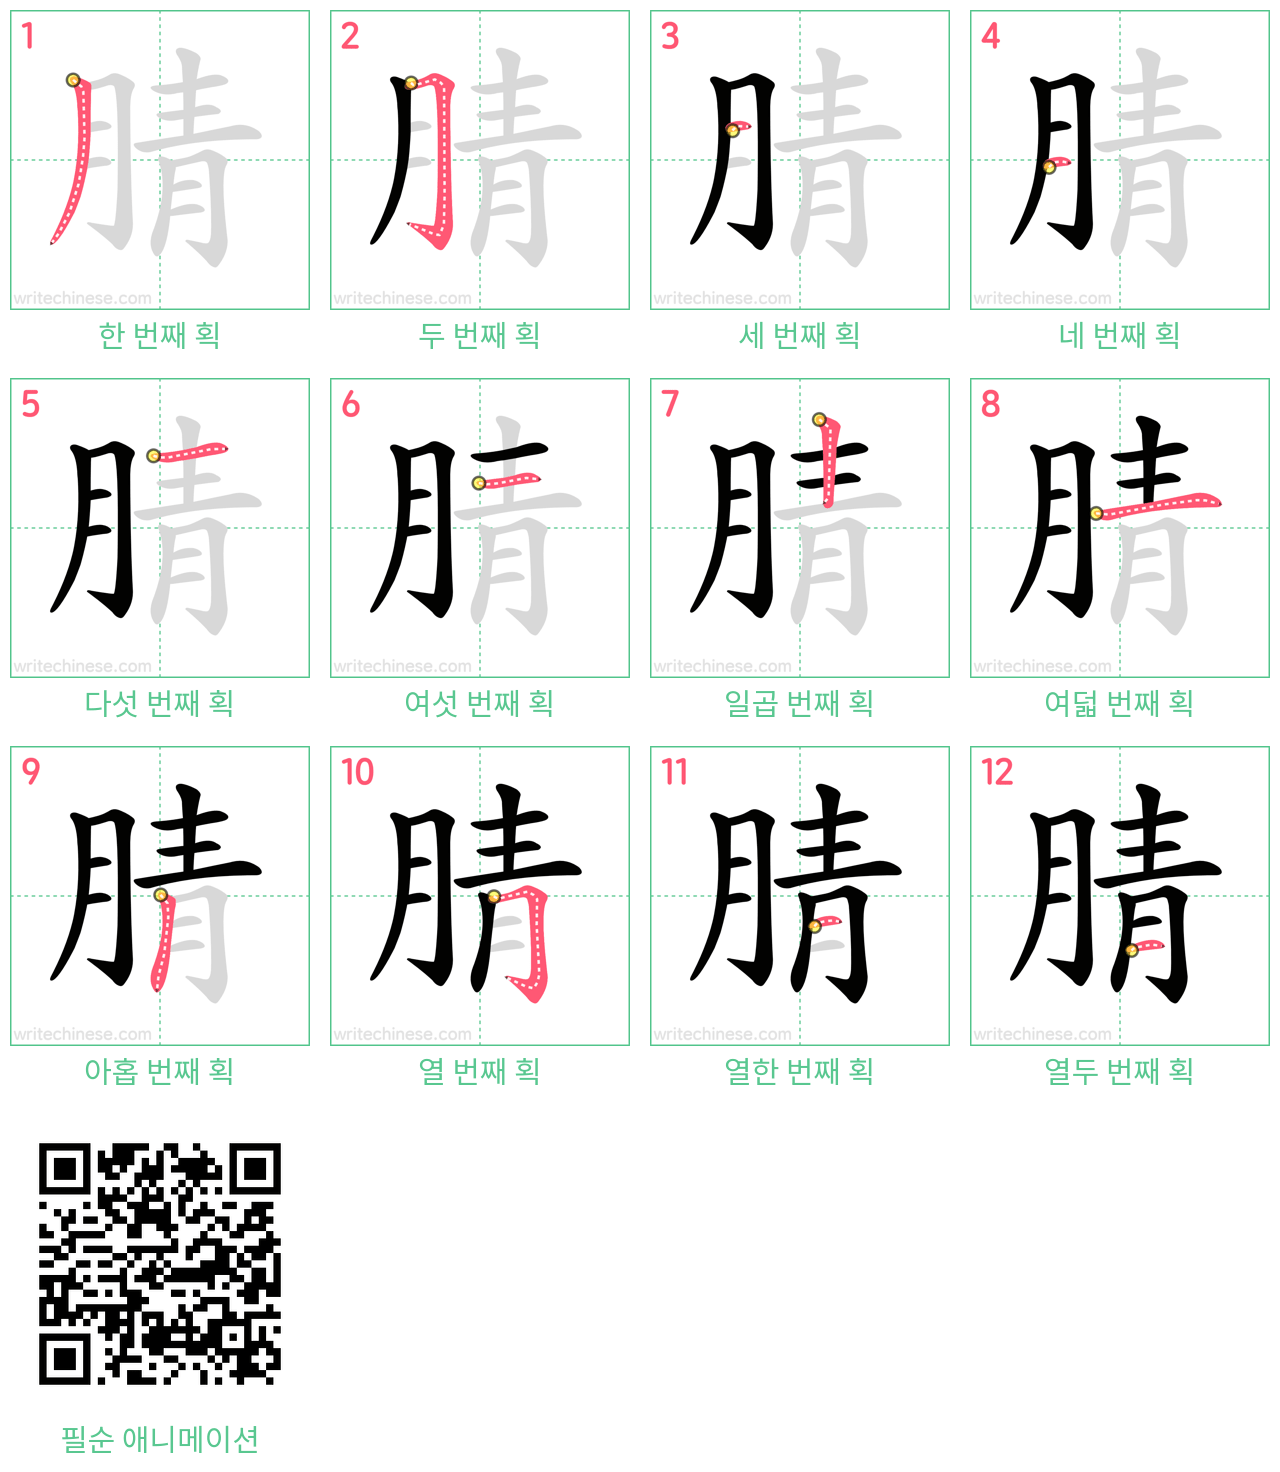 腈 step-by-step stroke order diagrams